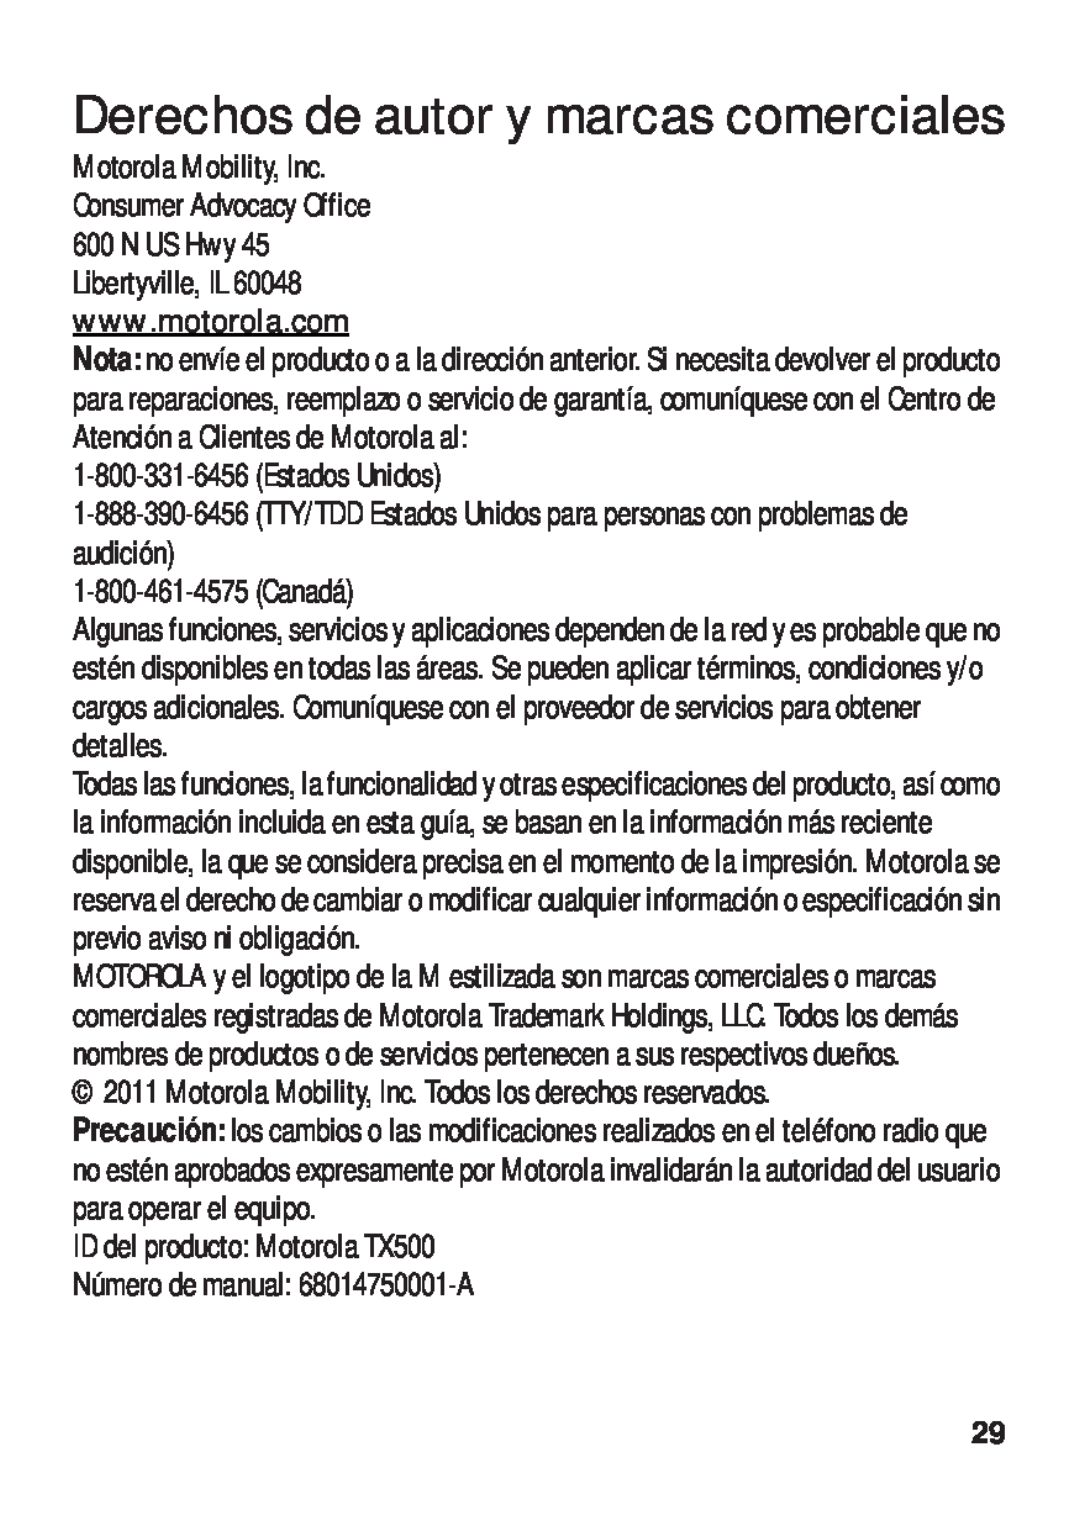 Motorola Derechos de autor y marcas comerciales, ID del producto Motorola TX500, Número de manual 68014750001-A 